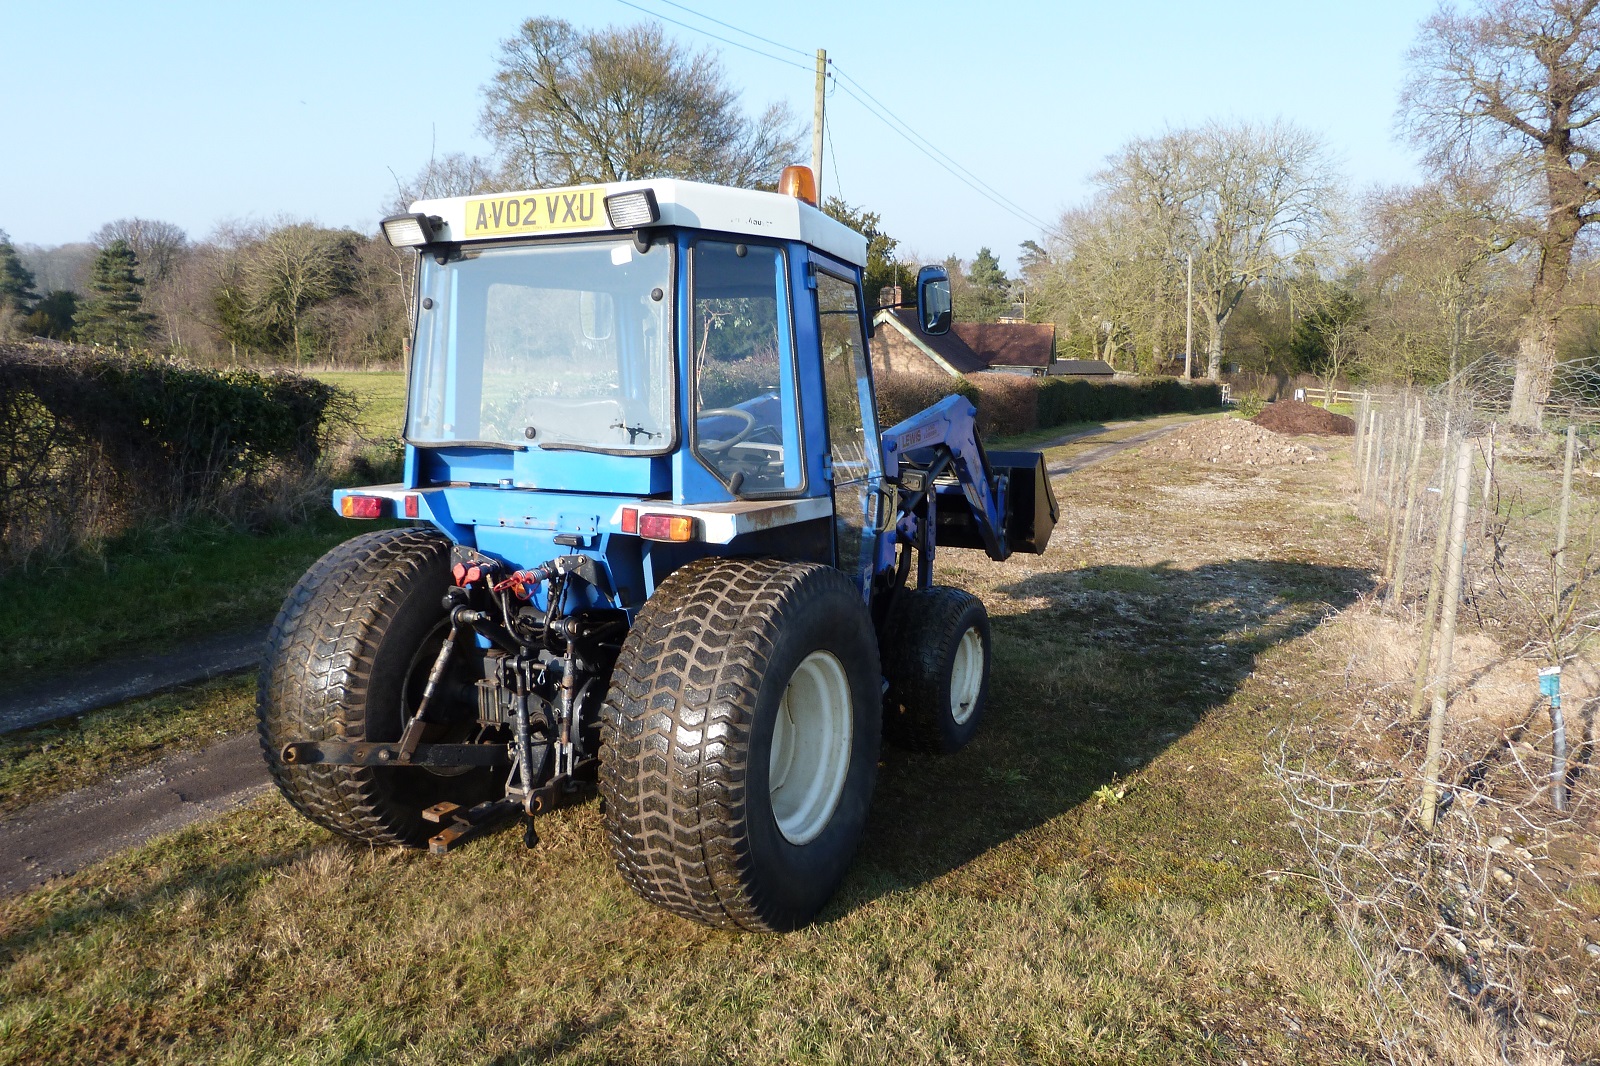 Iseki TK532 Tractor c/w Lewis Front Loader & bucket « Agrihort